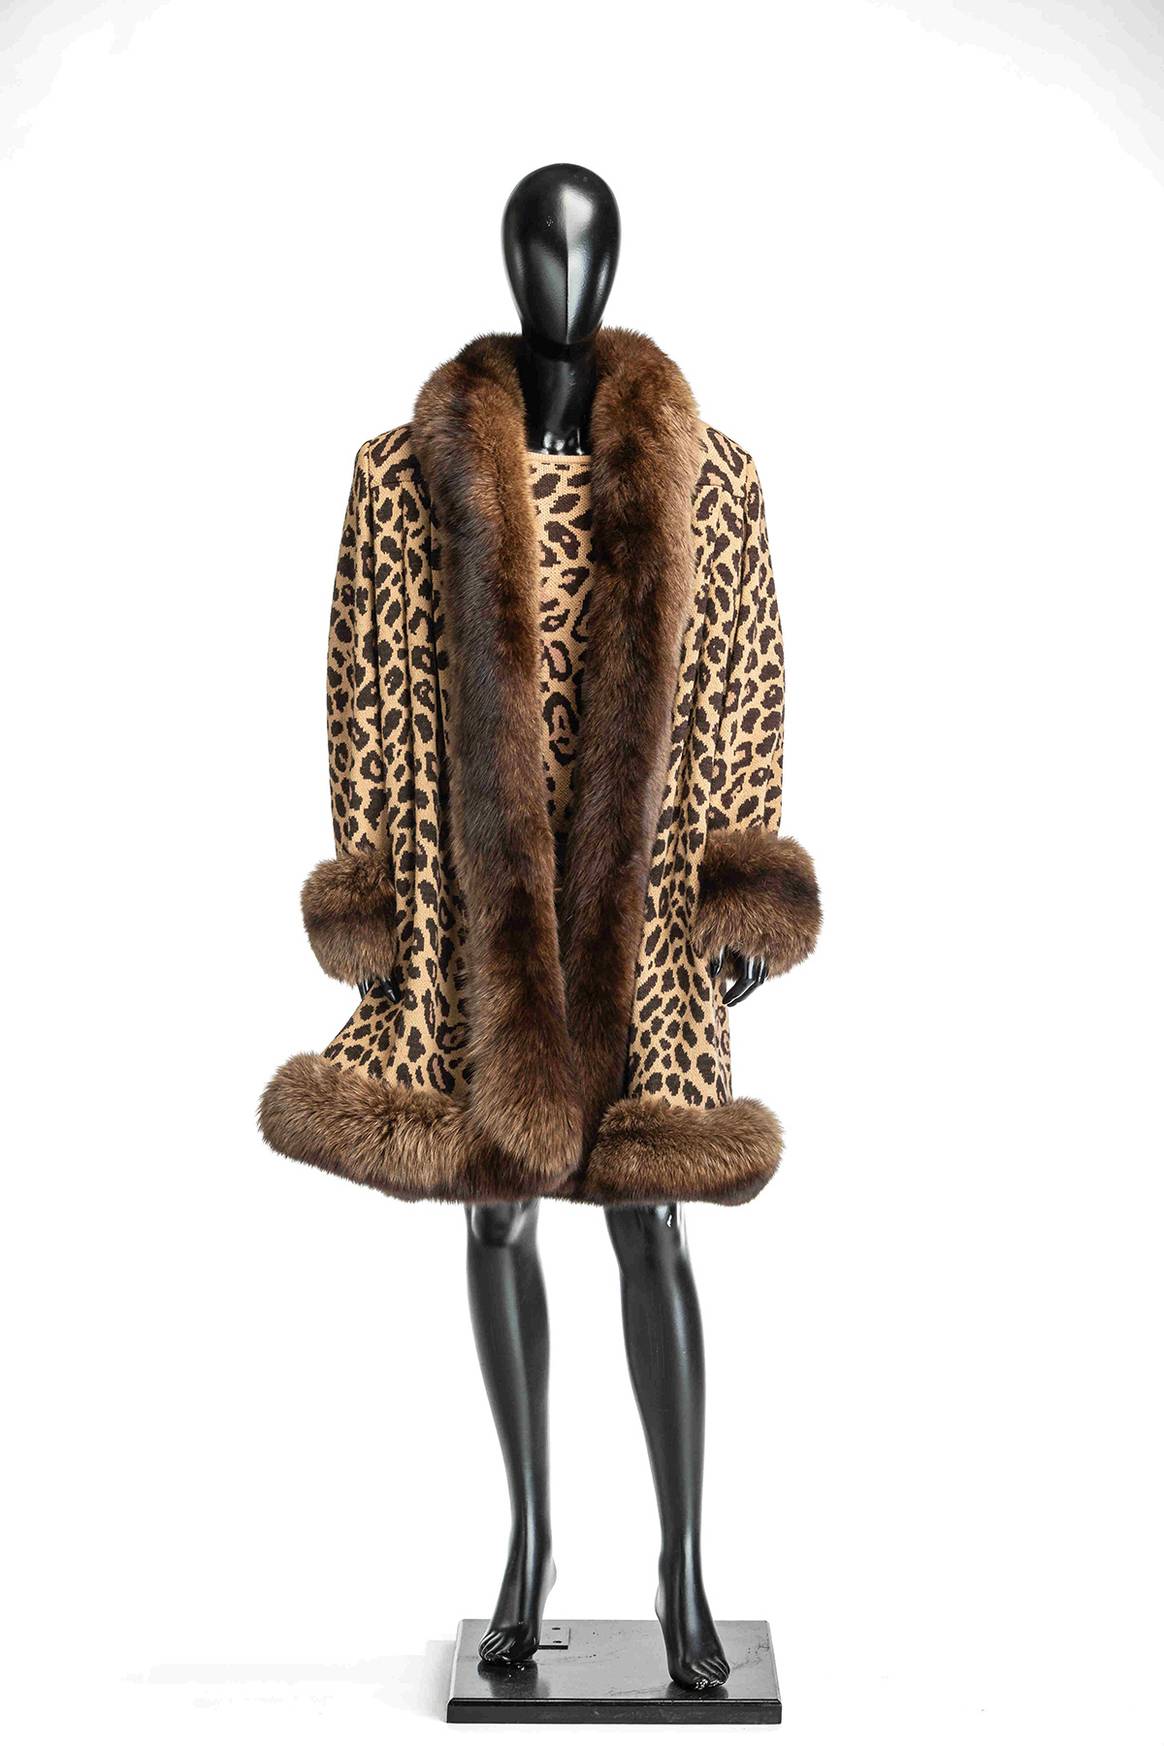 Abrigo y suéter de punto en estampado de leopardo y con perfiles en piel de zorro de Valentino, piezas de la colección de Lorenzo Caprile.